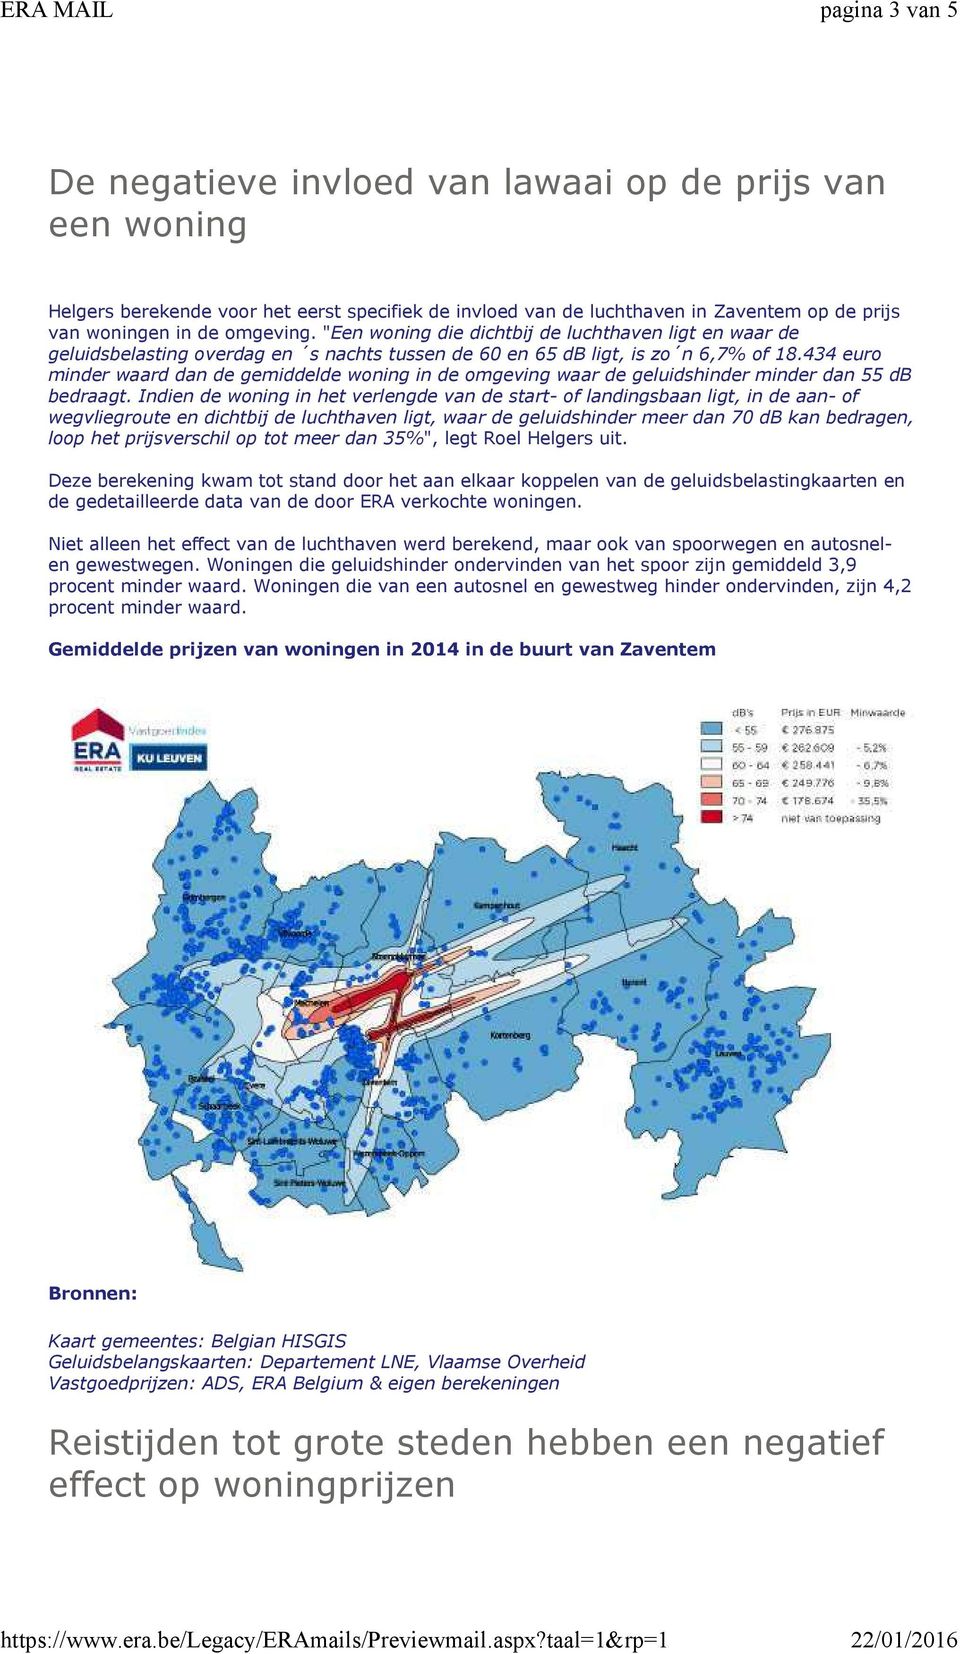 434 euro minder waard dan de gemiddelde woning in de omgeving waar de geluidshinder minder dan 55 db bedraagt.